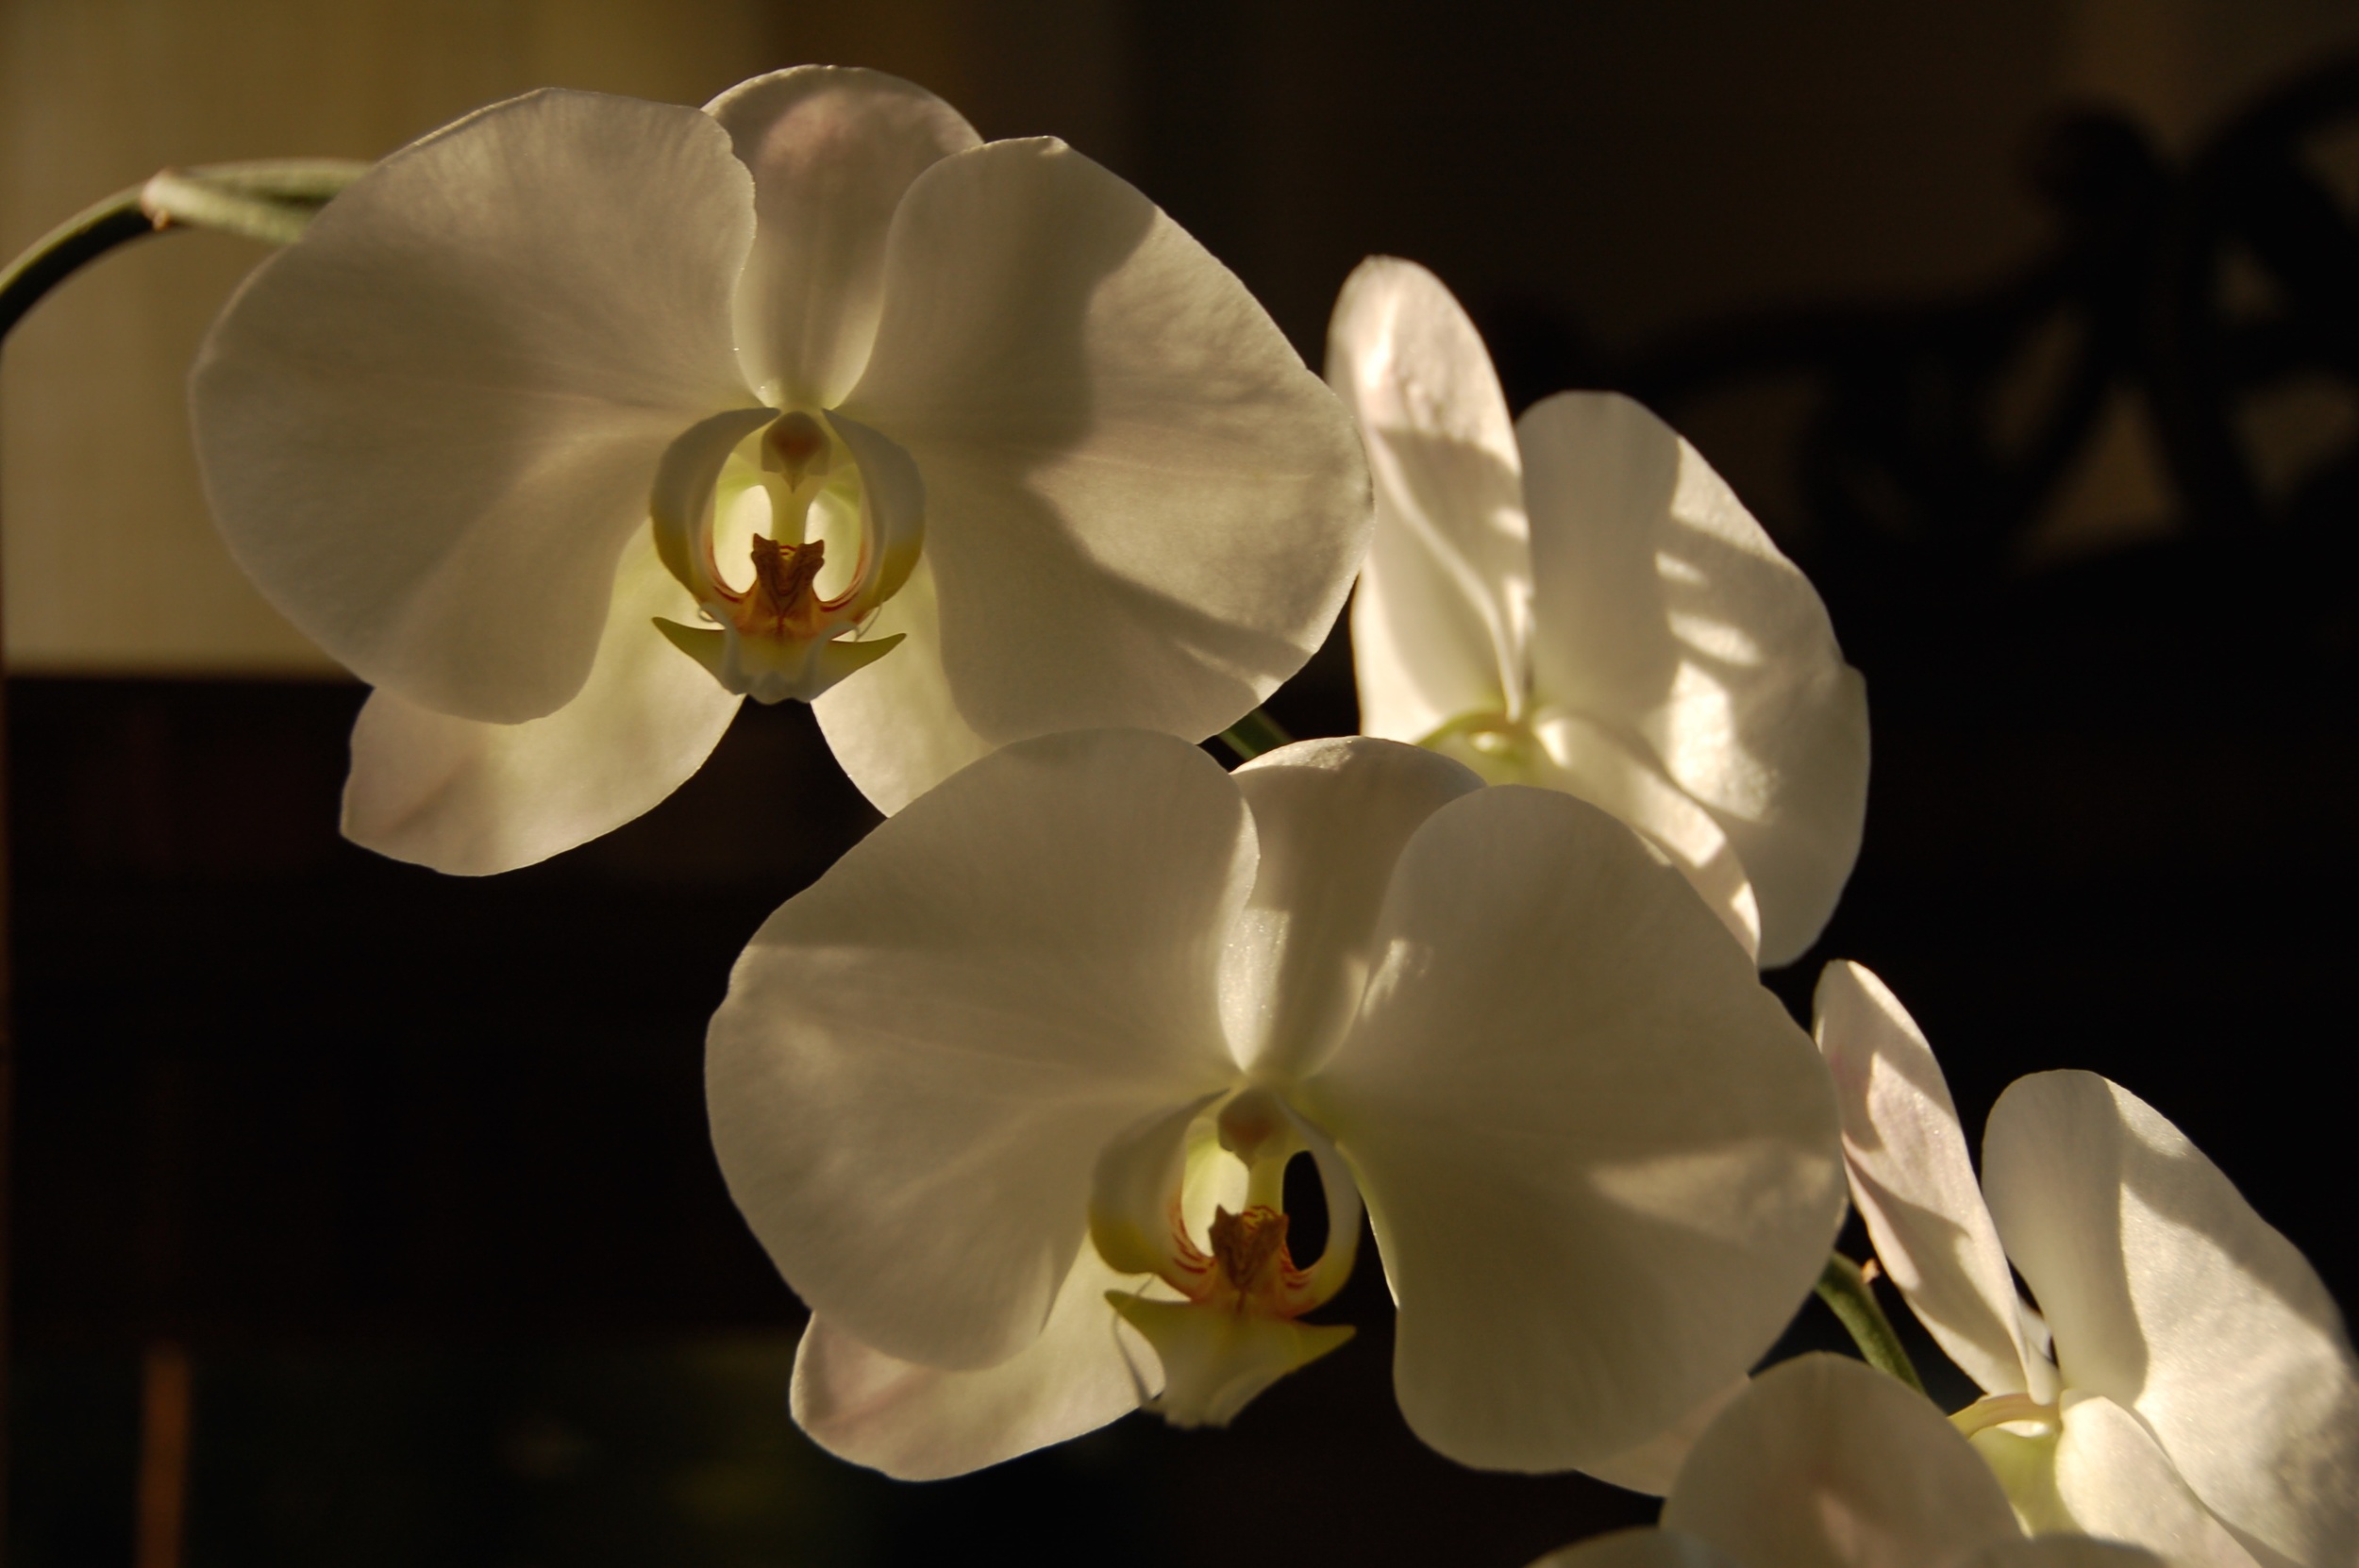  Orquídeas a las Siete 2010   